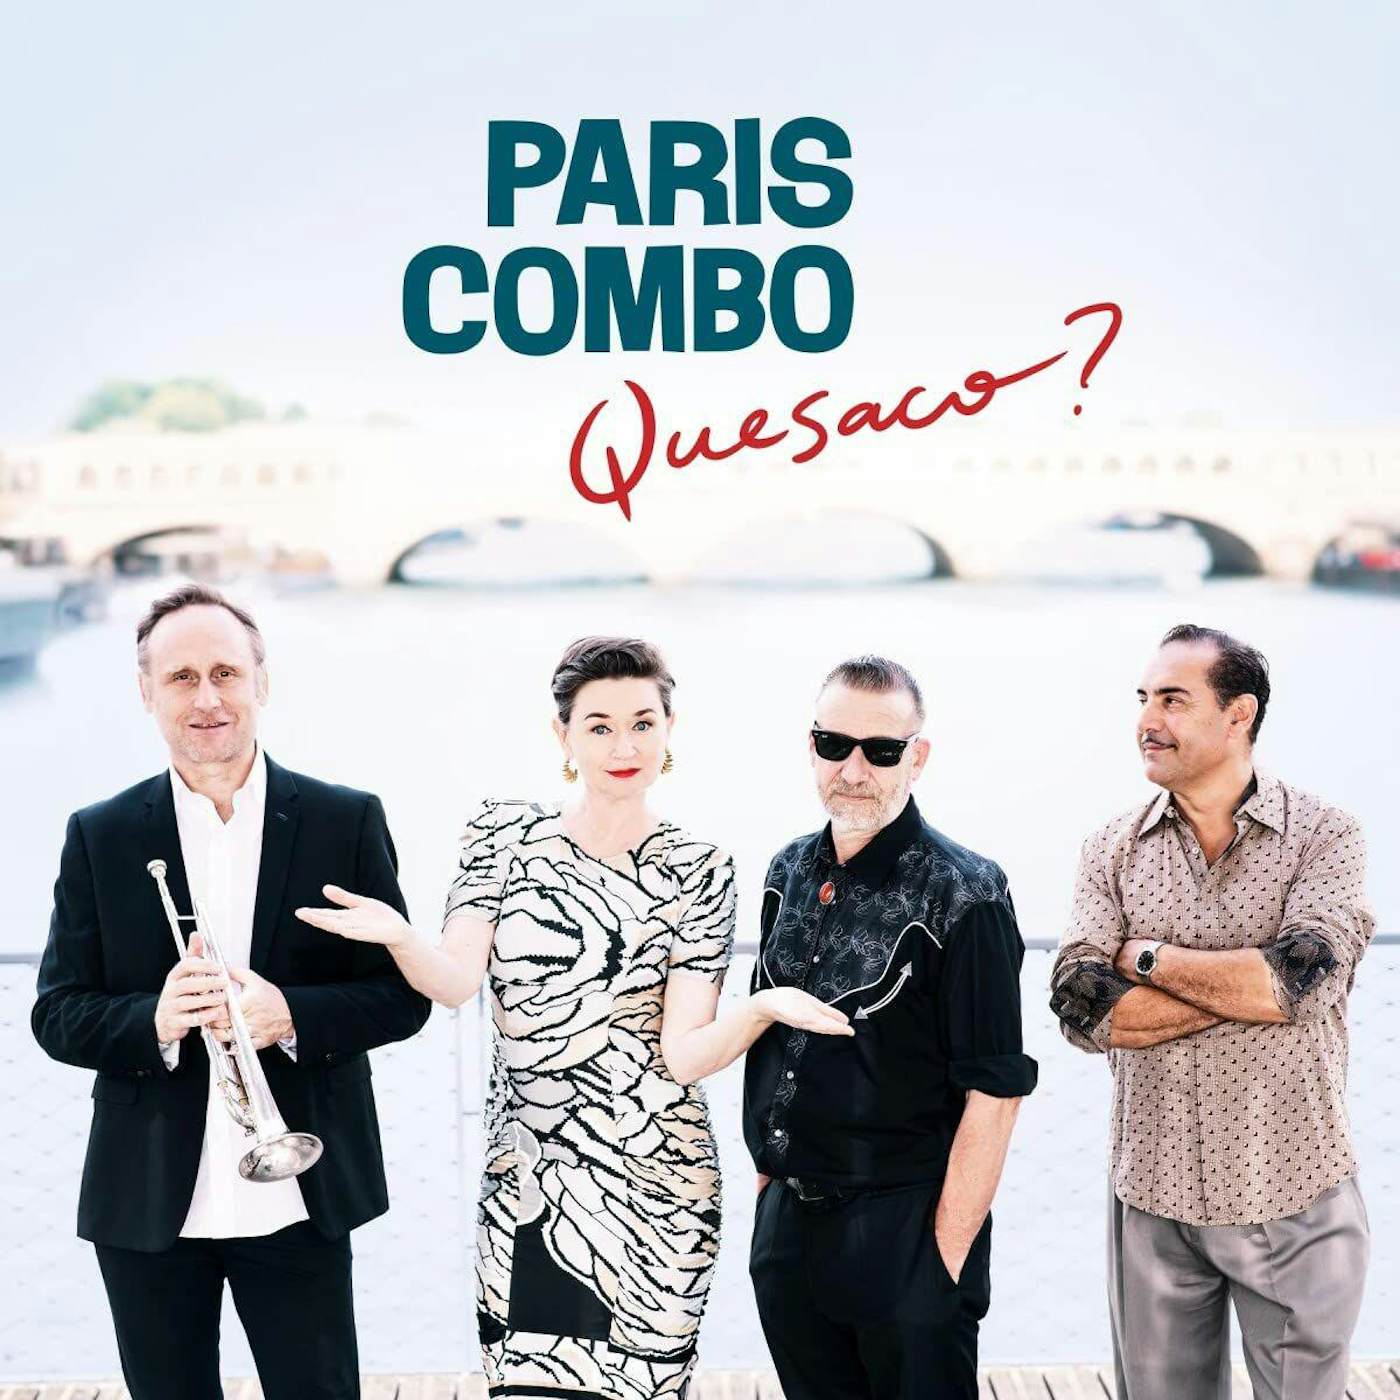 Paris Combo Quesaco ? Vinyl Record